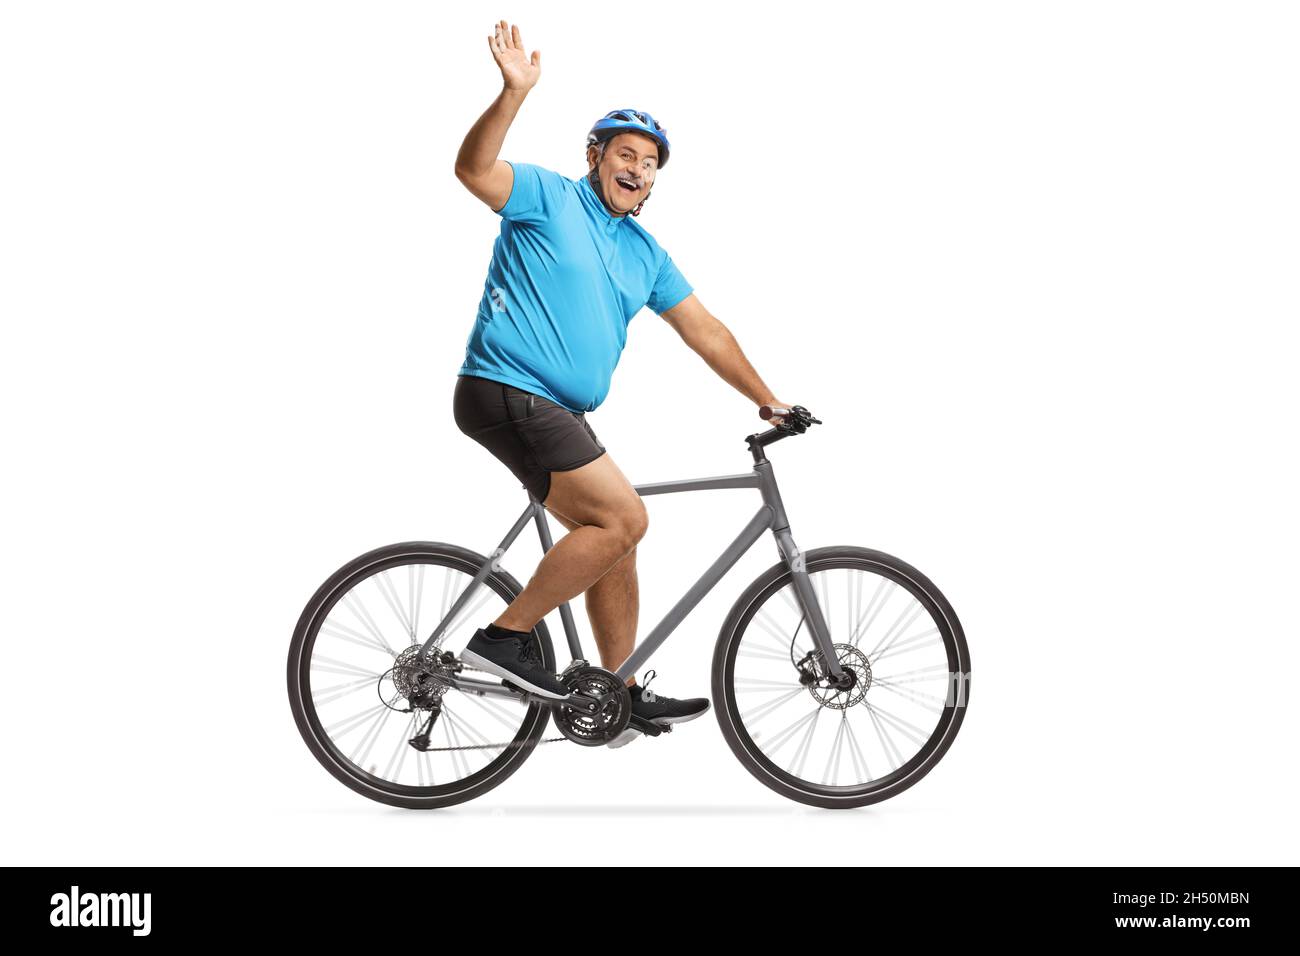 Fröhlicher reifer Radler, der auf einem Rennrad fährt und isoliert auf weißem Hintergrund winkt Stockfoto